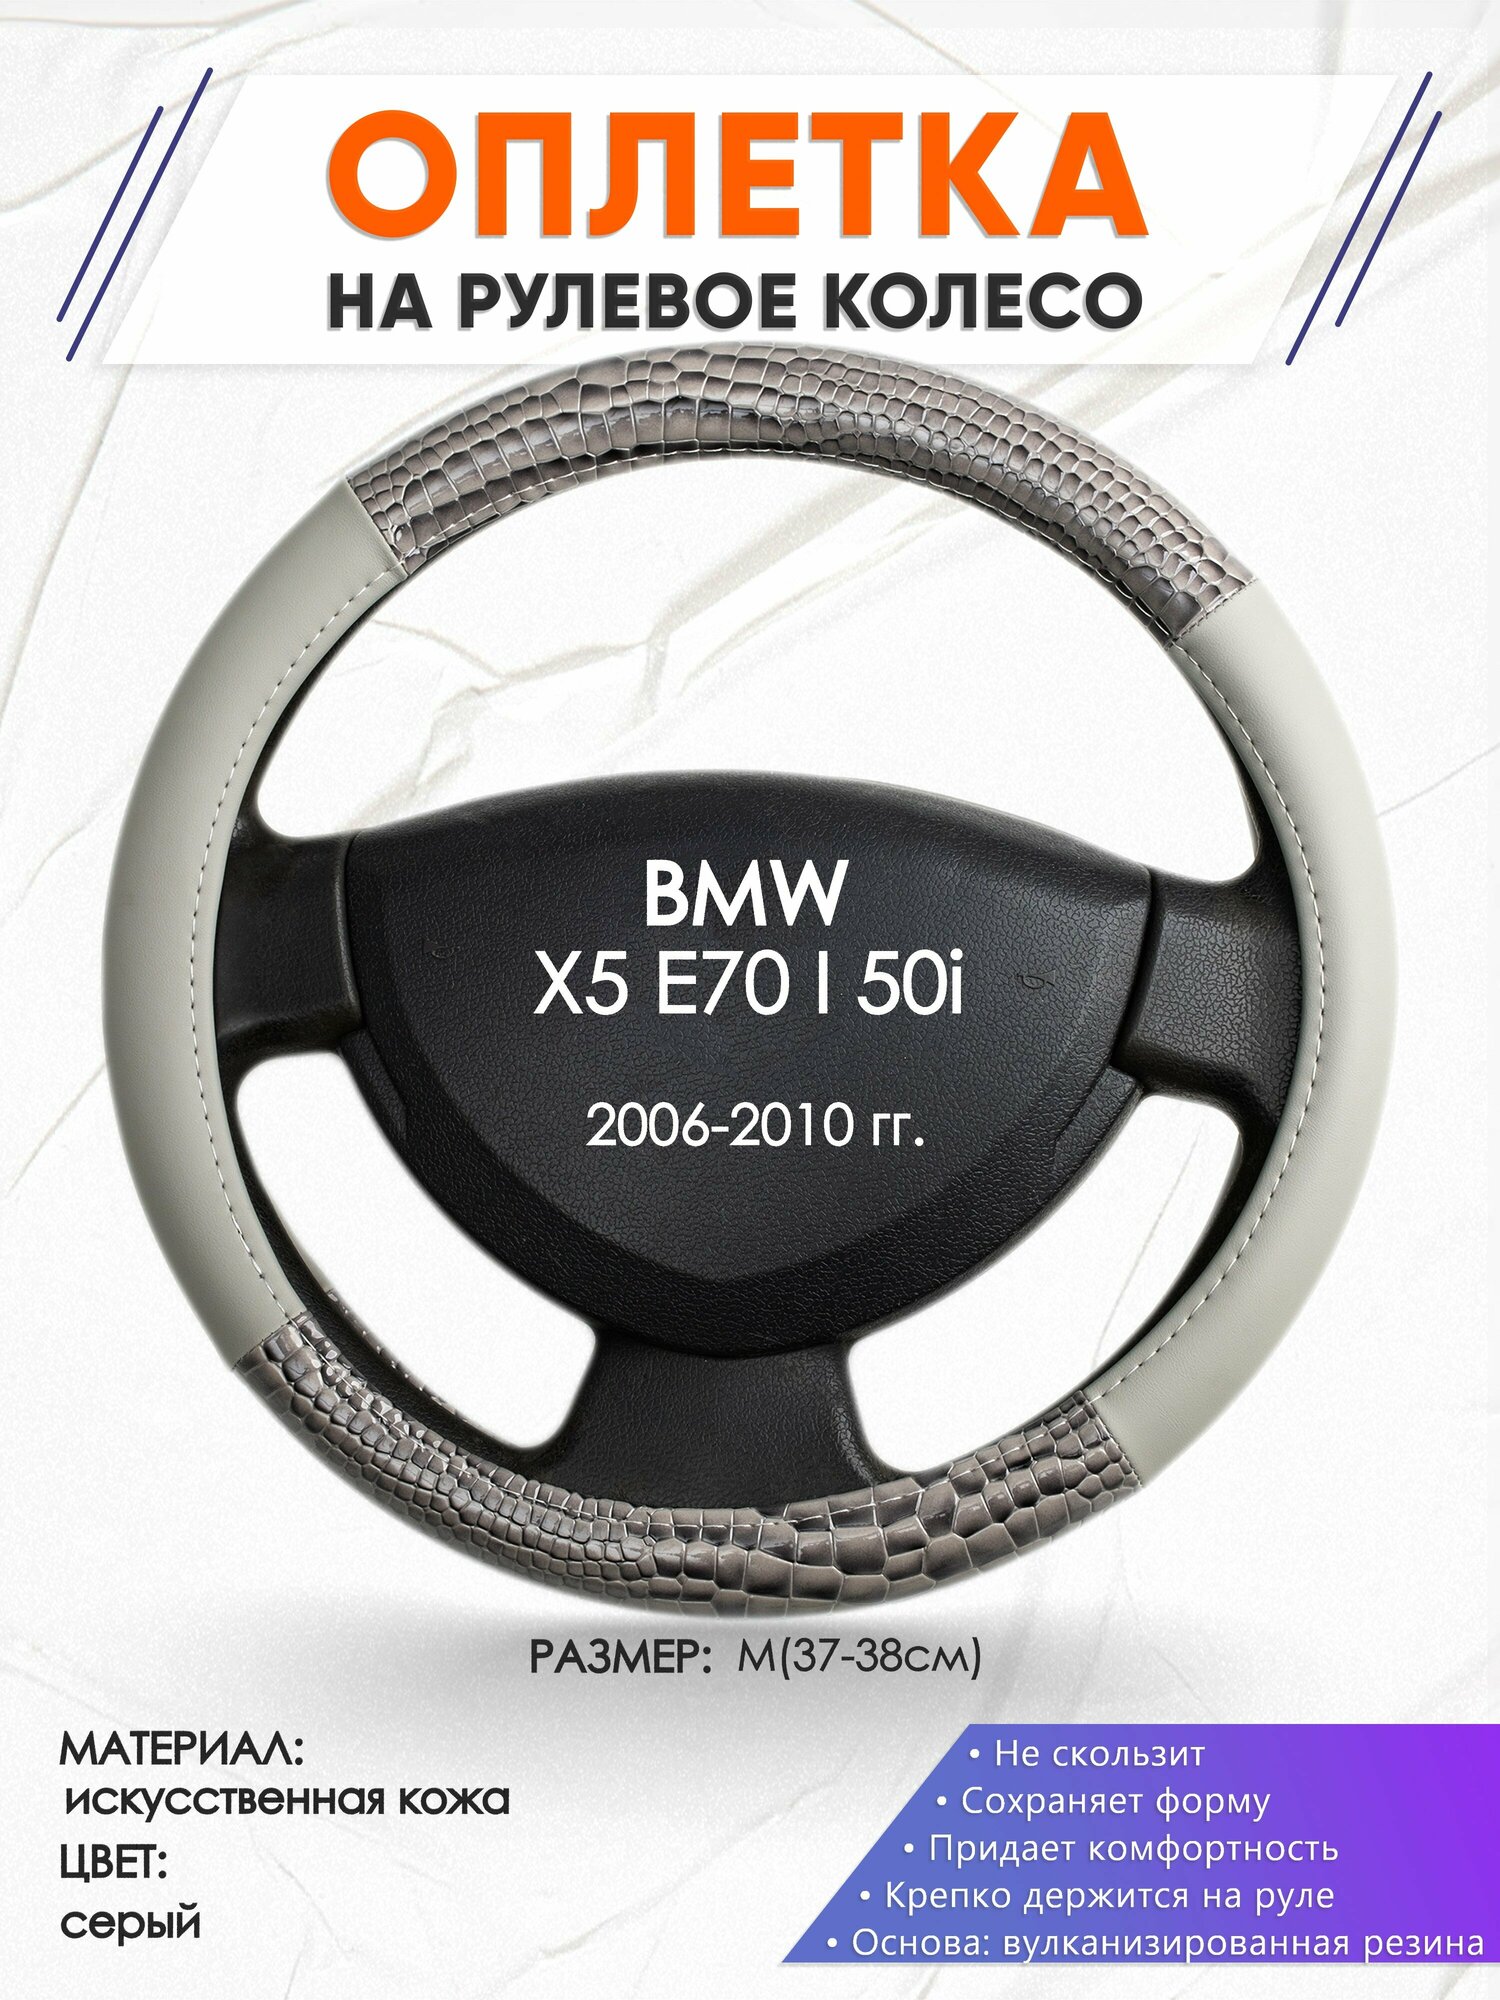 Оплетка наруль для BMW X5 E70 I 50i(Бмв икс 5 е70) 2006-2010 годов выпуска, размер M(37-38см), Искусственная кожа 84